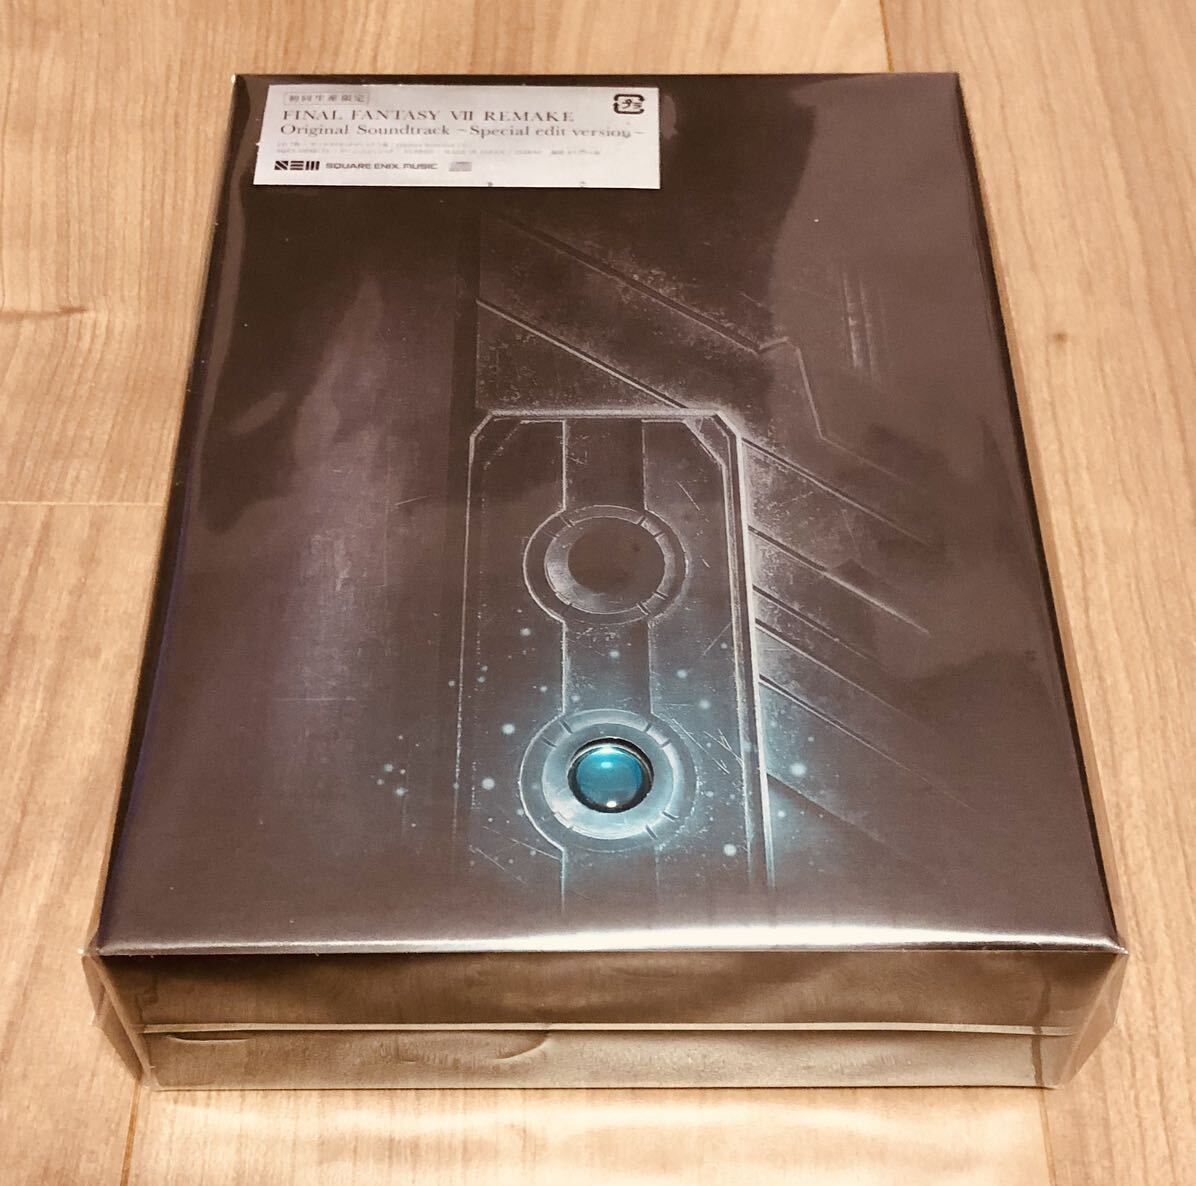  новый товар нераспечатанный FF7 переделка оригинал саундтрек первый раз производство ограничение запись саундтрек Yodo basi камера скорейший покупка дополнительный подарок 